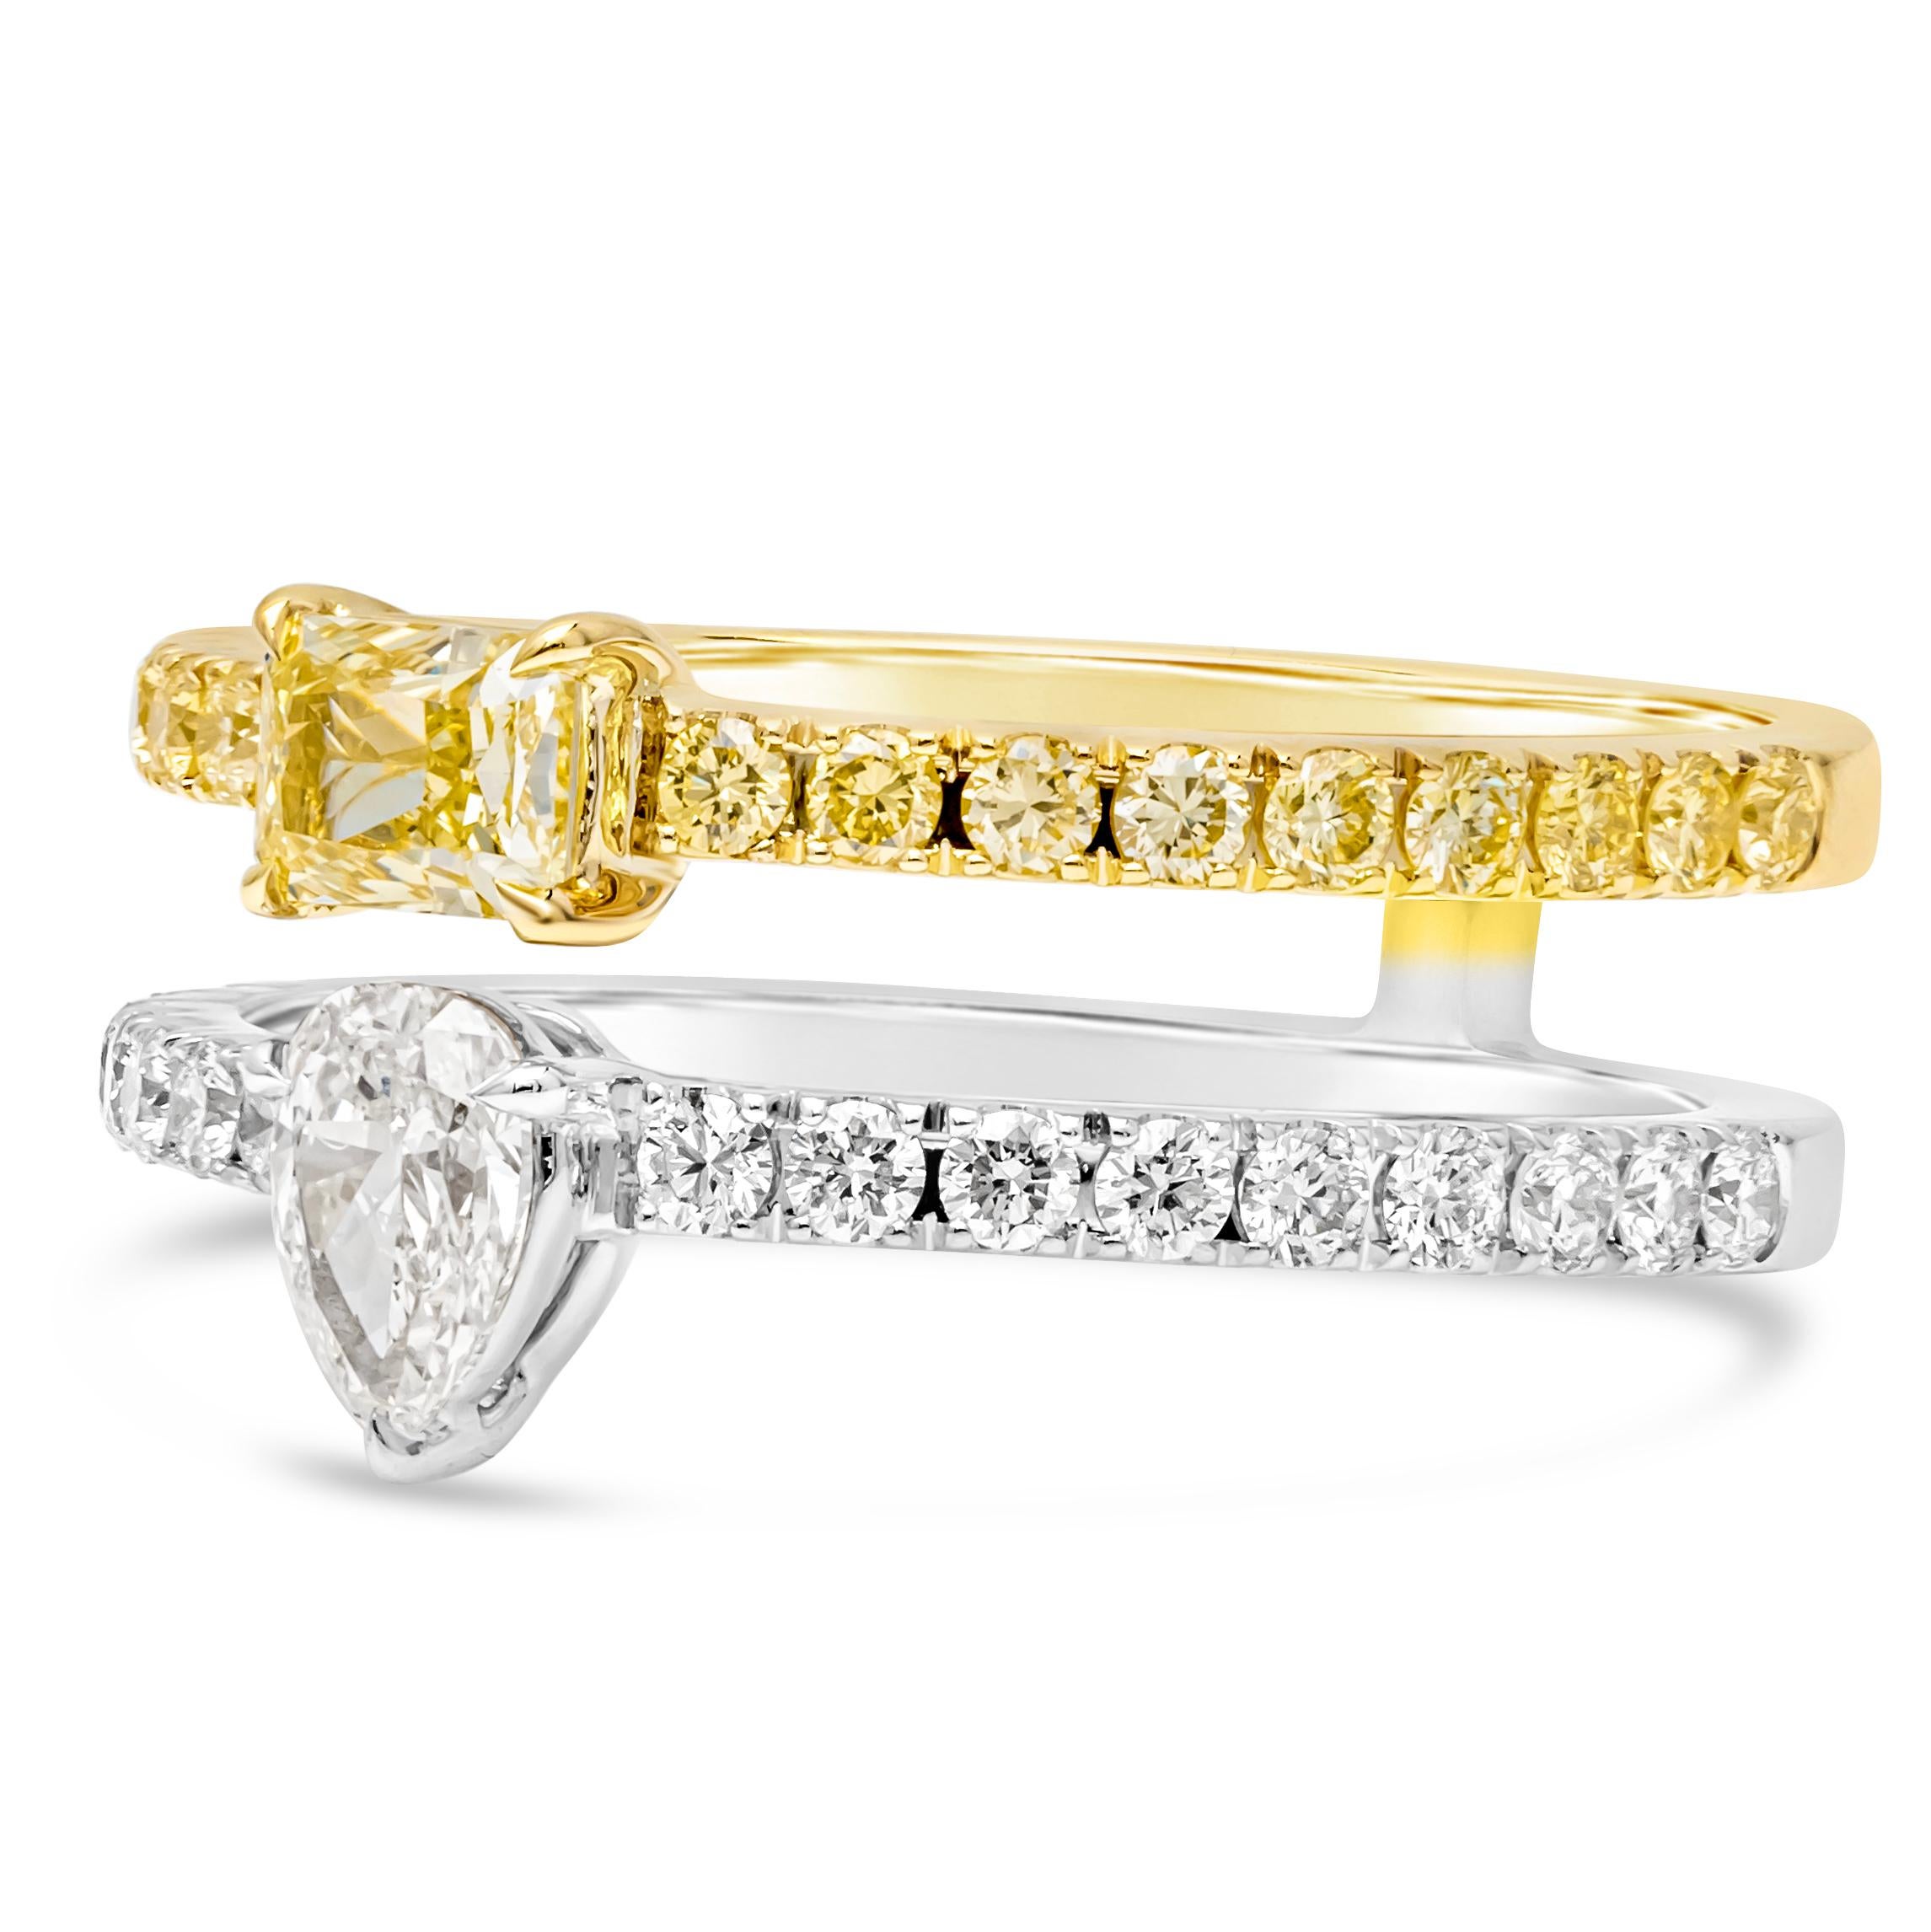 Cette exquise bague de mode à double anneau présente une combinaison étonnante d'élégance et d'éclat. Un anneau présente un diamant central de couleur fantaisie à taille coussin, accentué par des diamants ronds de couleur fantaisie en pavé, sertis